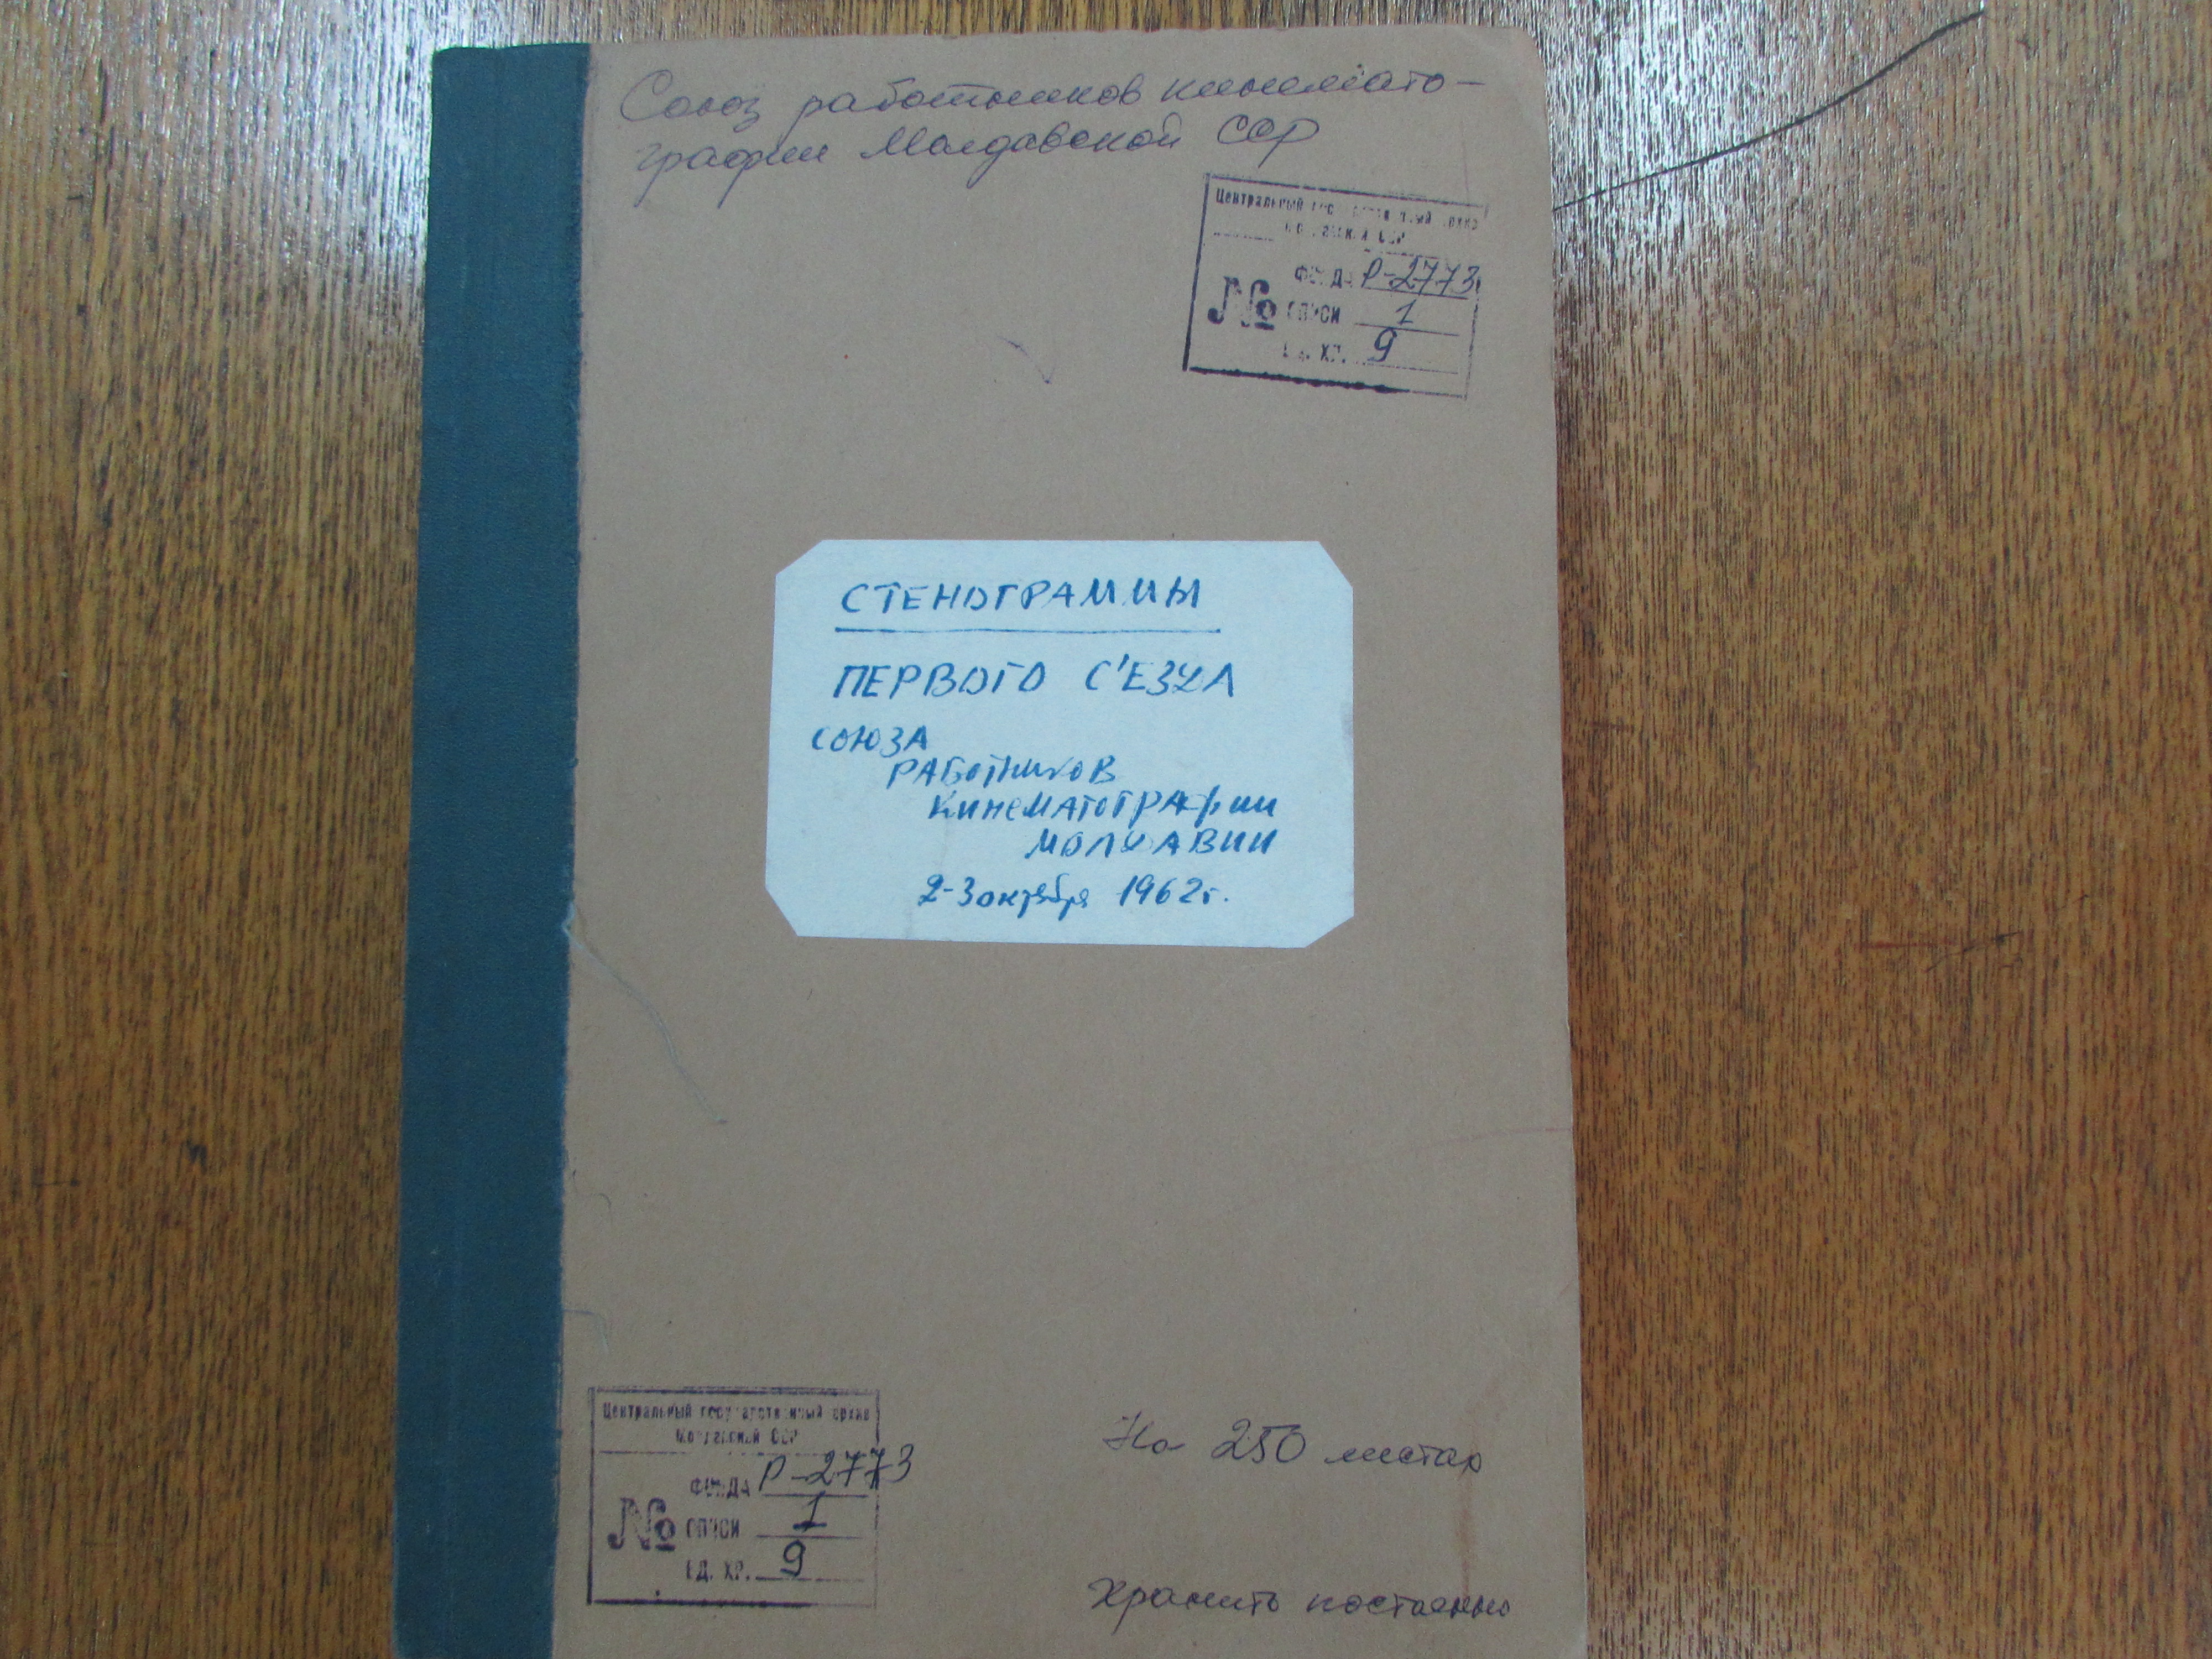 Coperta dosarului din AOSPRM privind Primul Congres al UCM (2-3 octombrie 1962) 